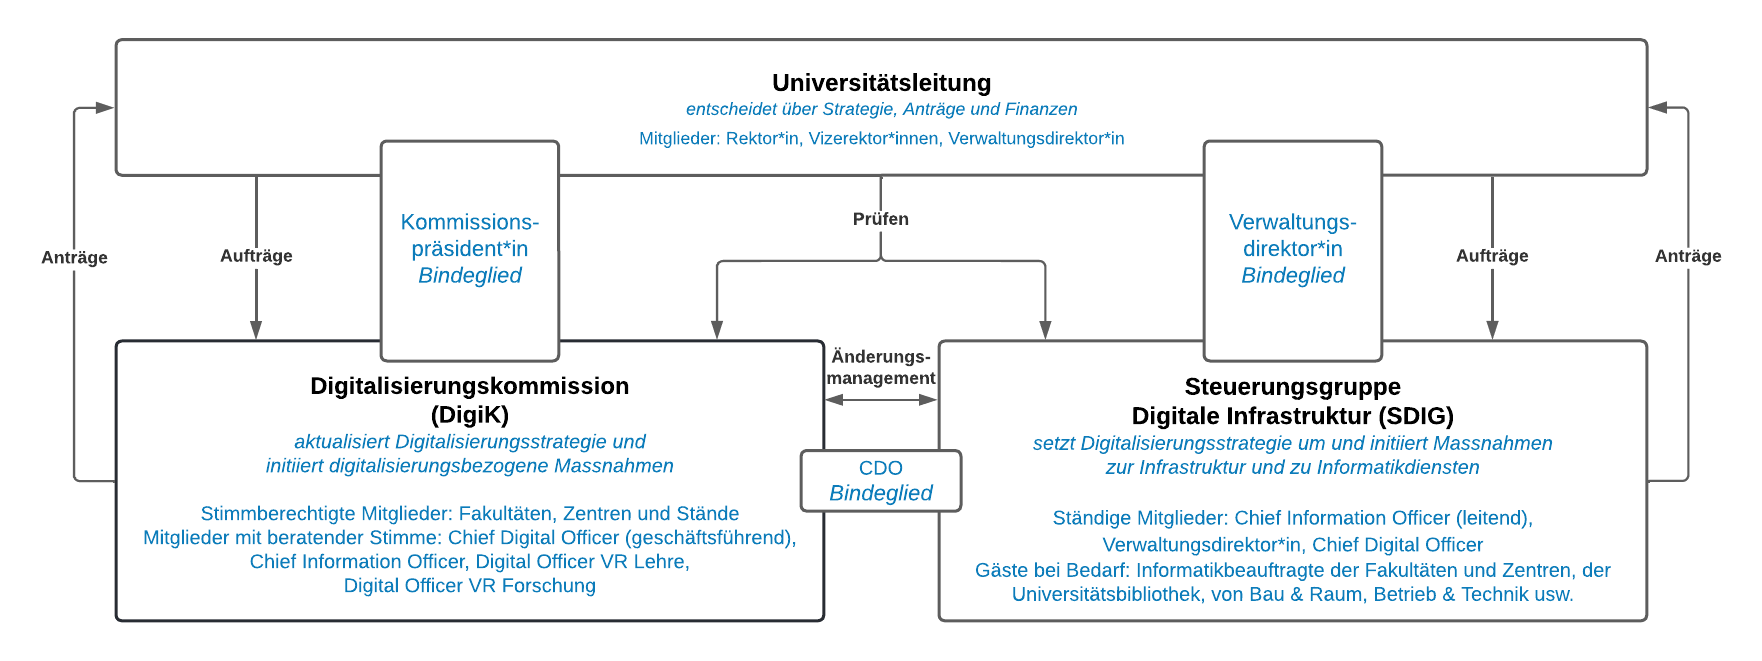 Organigramm der Governance zur digitalen Transformation der Universität Bern